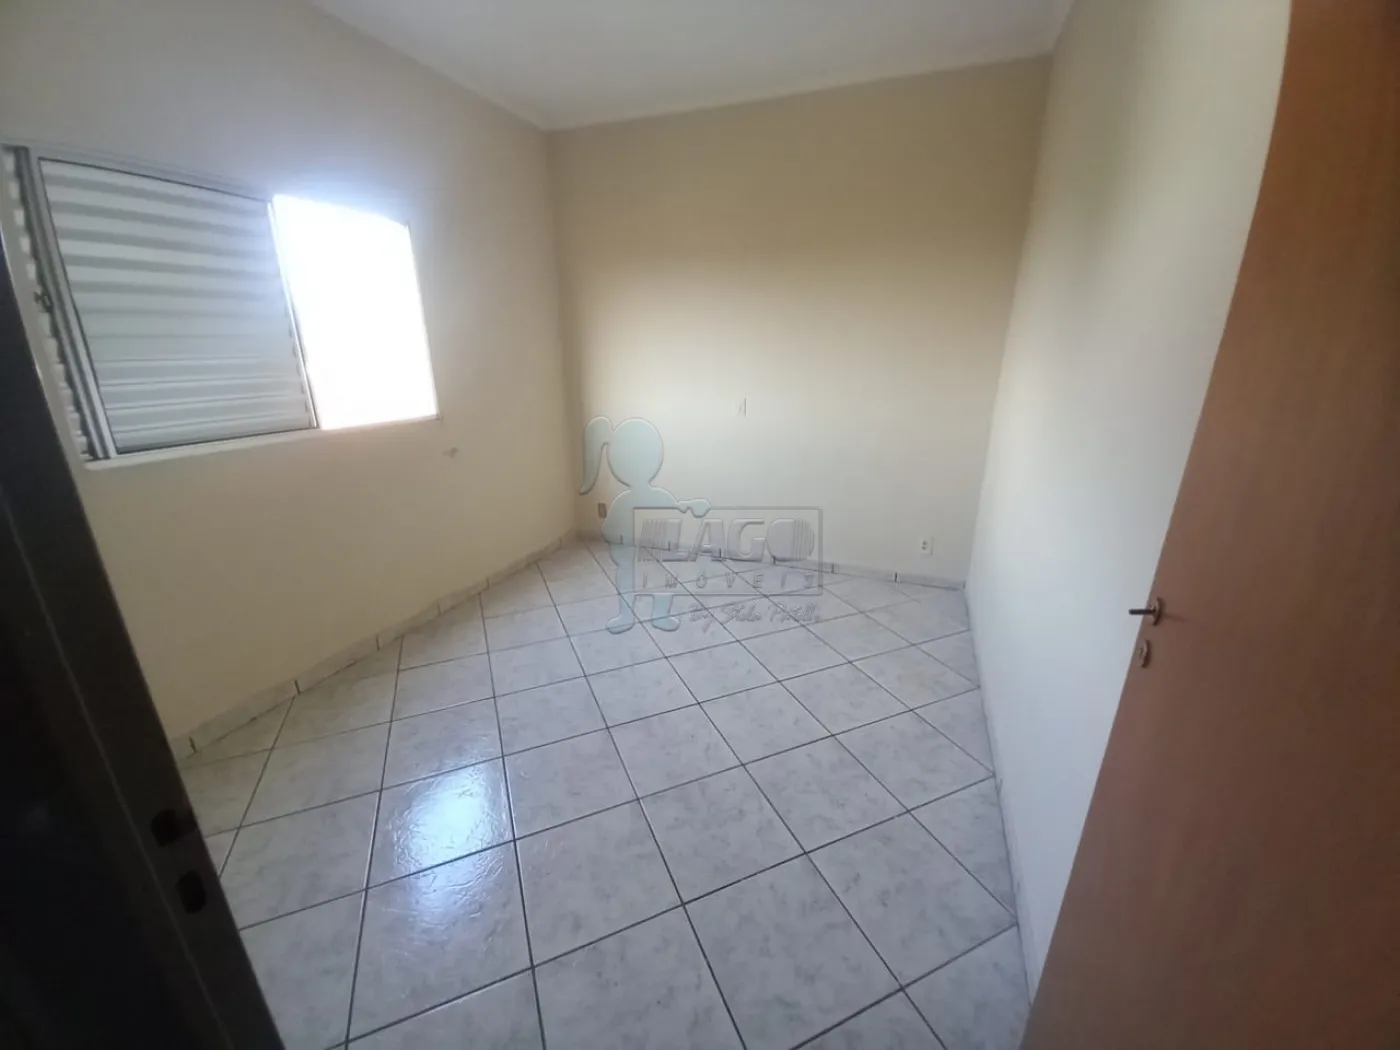 Alugar Apartamentos / Duplex em Ribeirão Preto R$ 750,00 - Foto 12